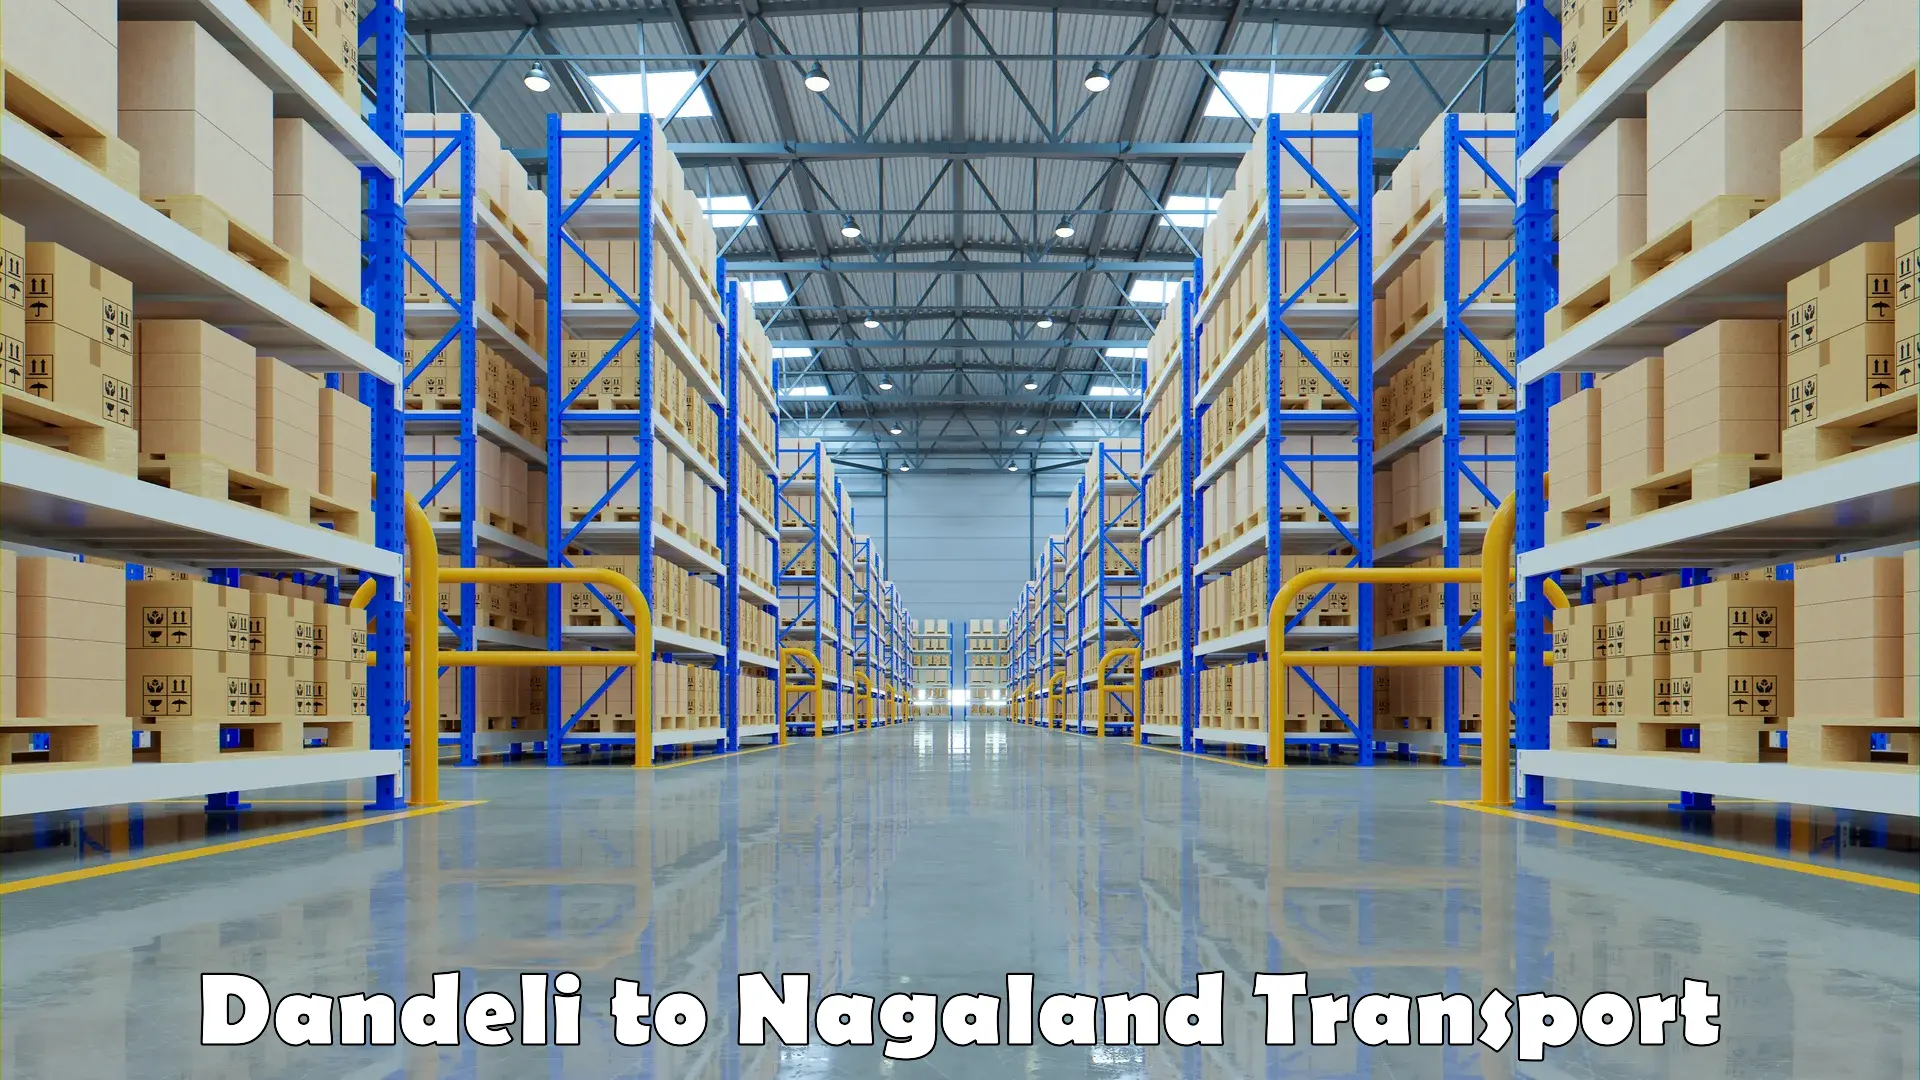 Nationwide transport services Dandeli to Nagaland